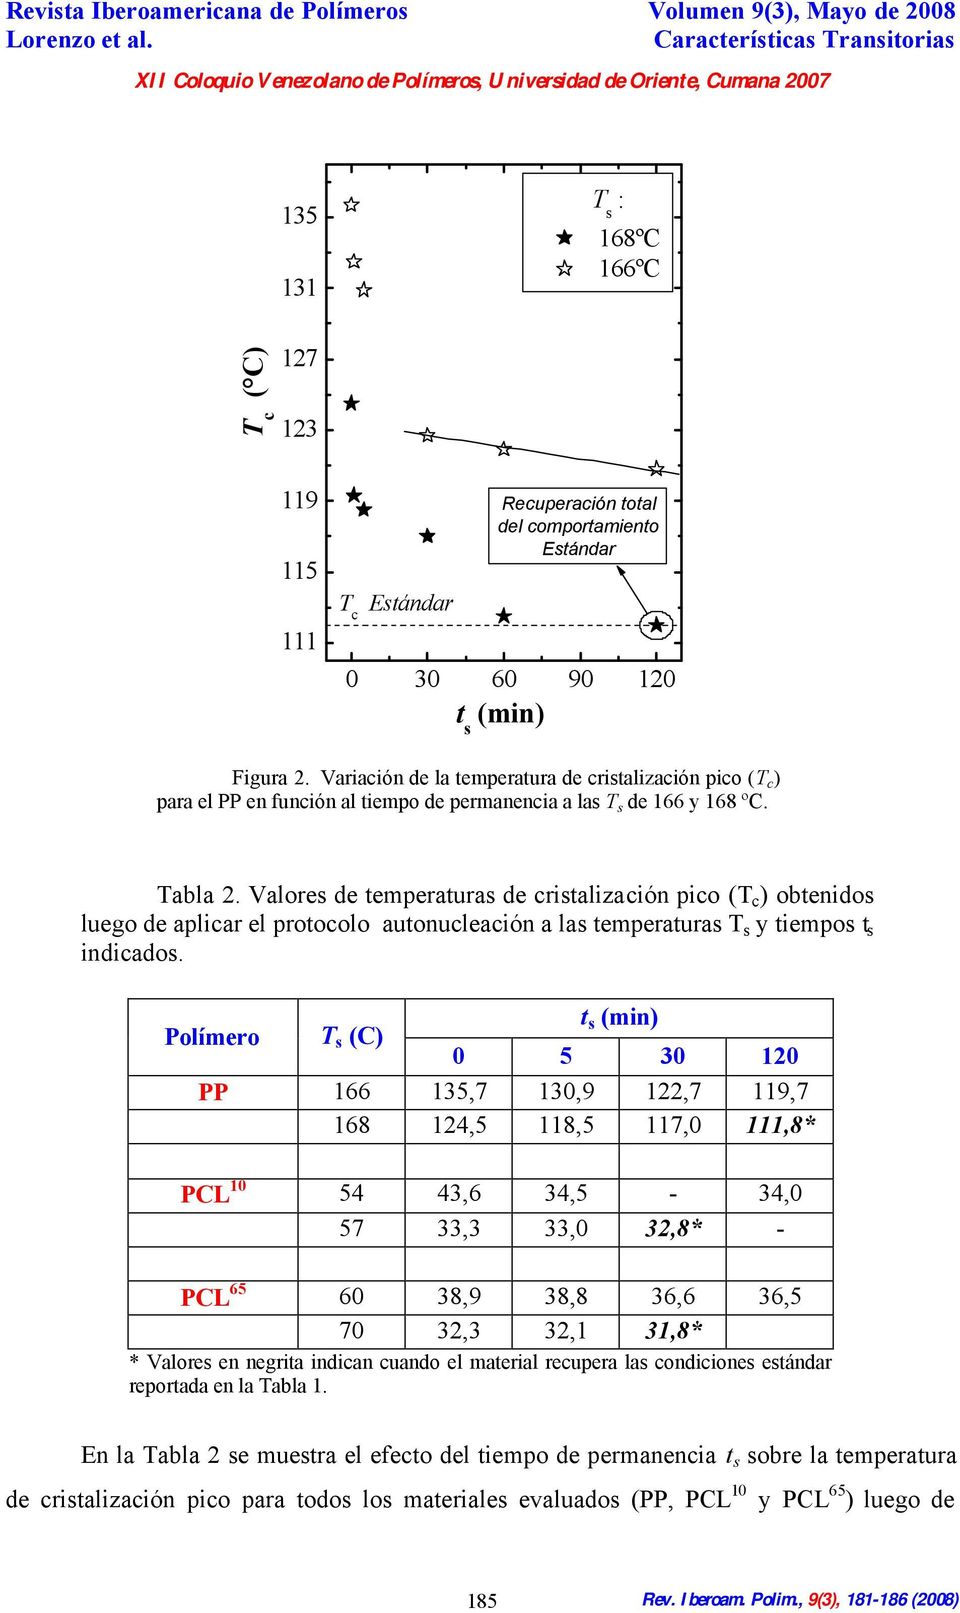 Valores de temperaturas de cristalización pico (T c ) obtenidos luego de aplicar el protocolo autonucleación a las temperaturas T s y tiempos t s indicados.